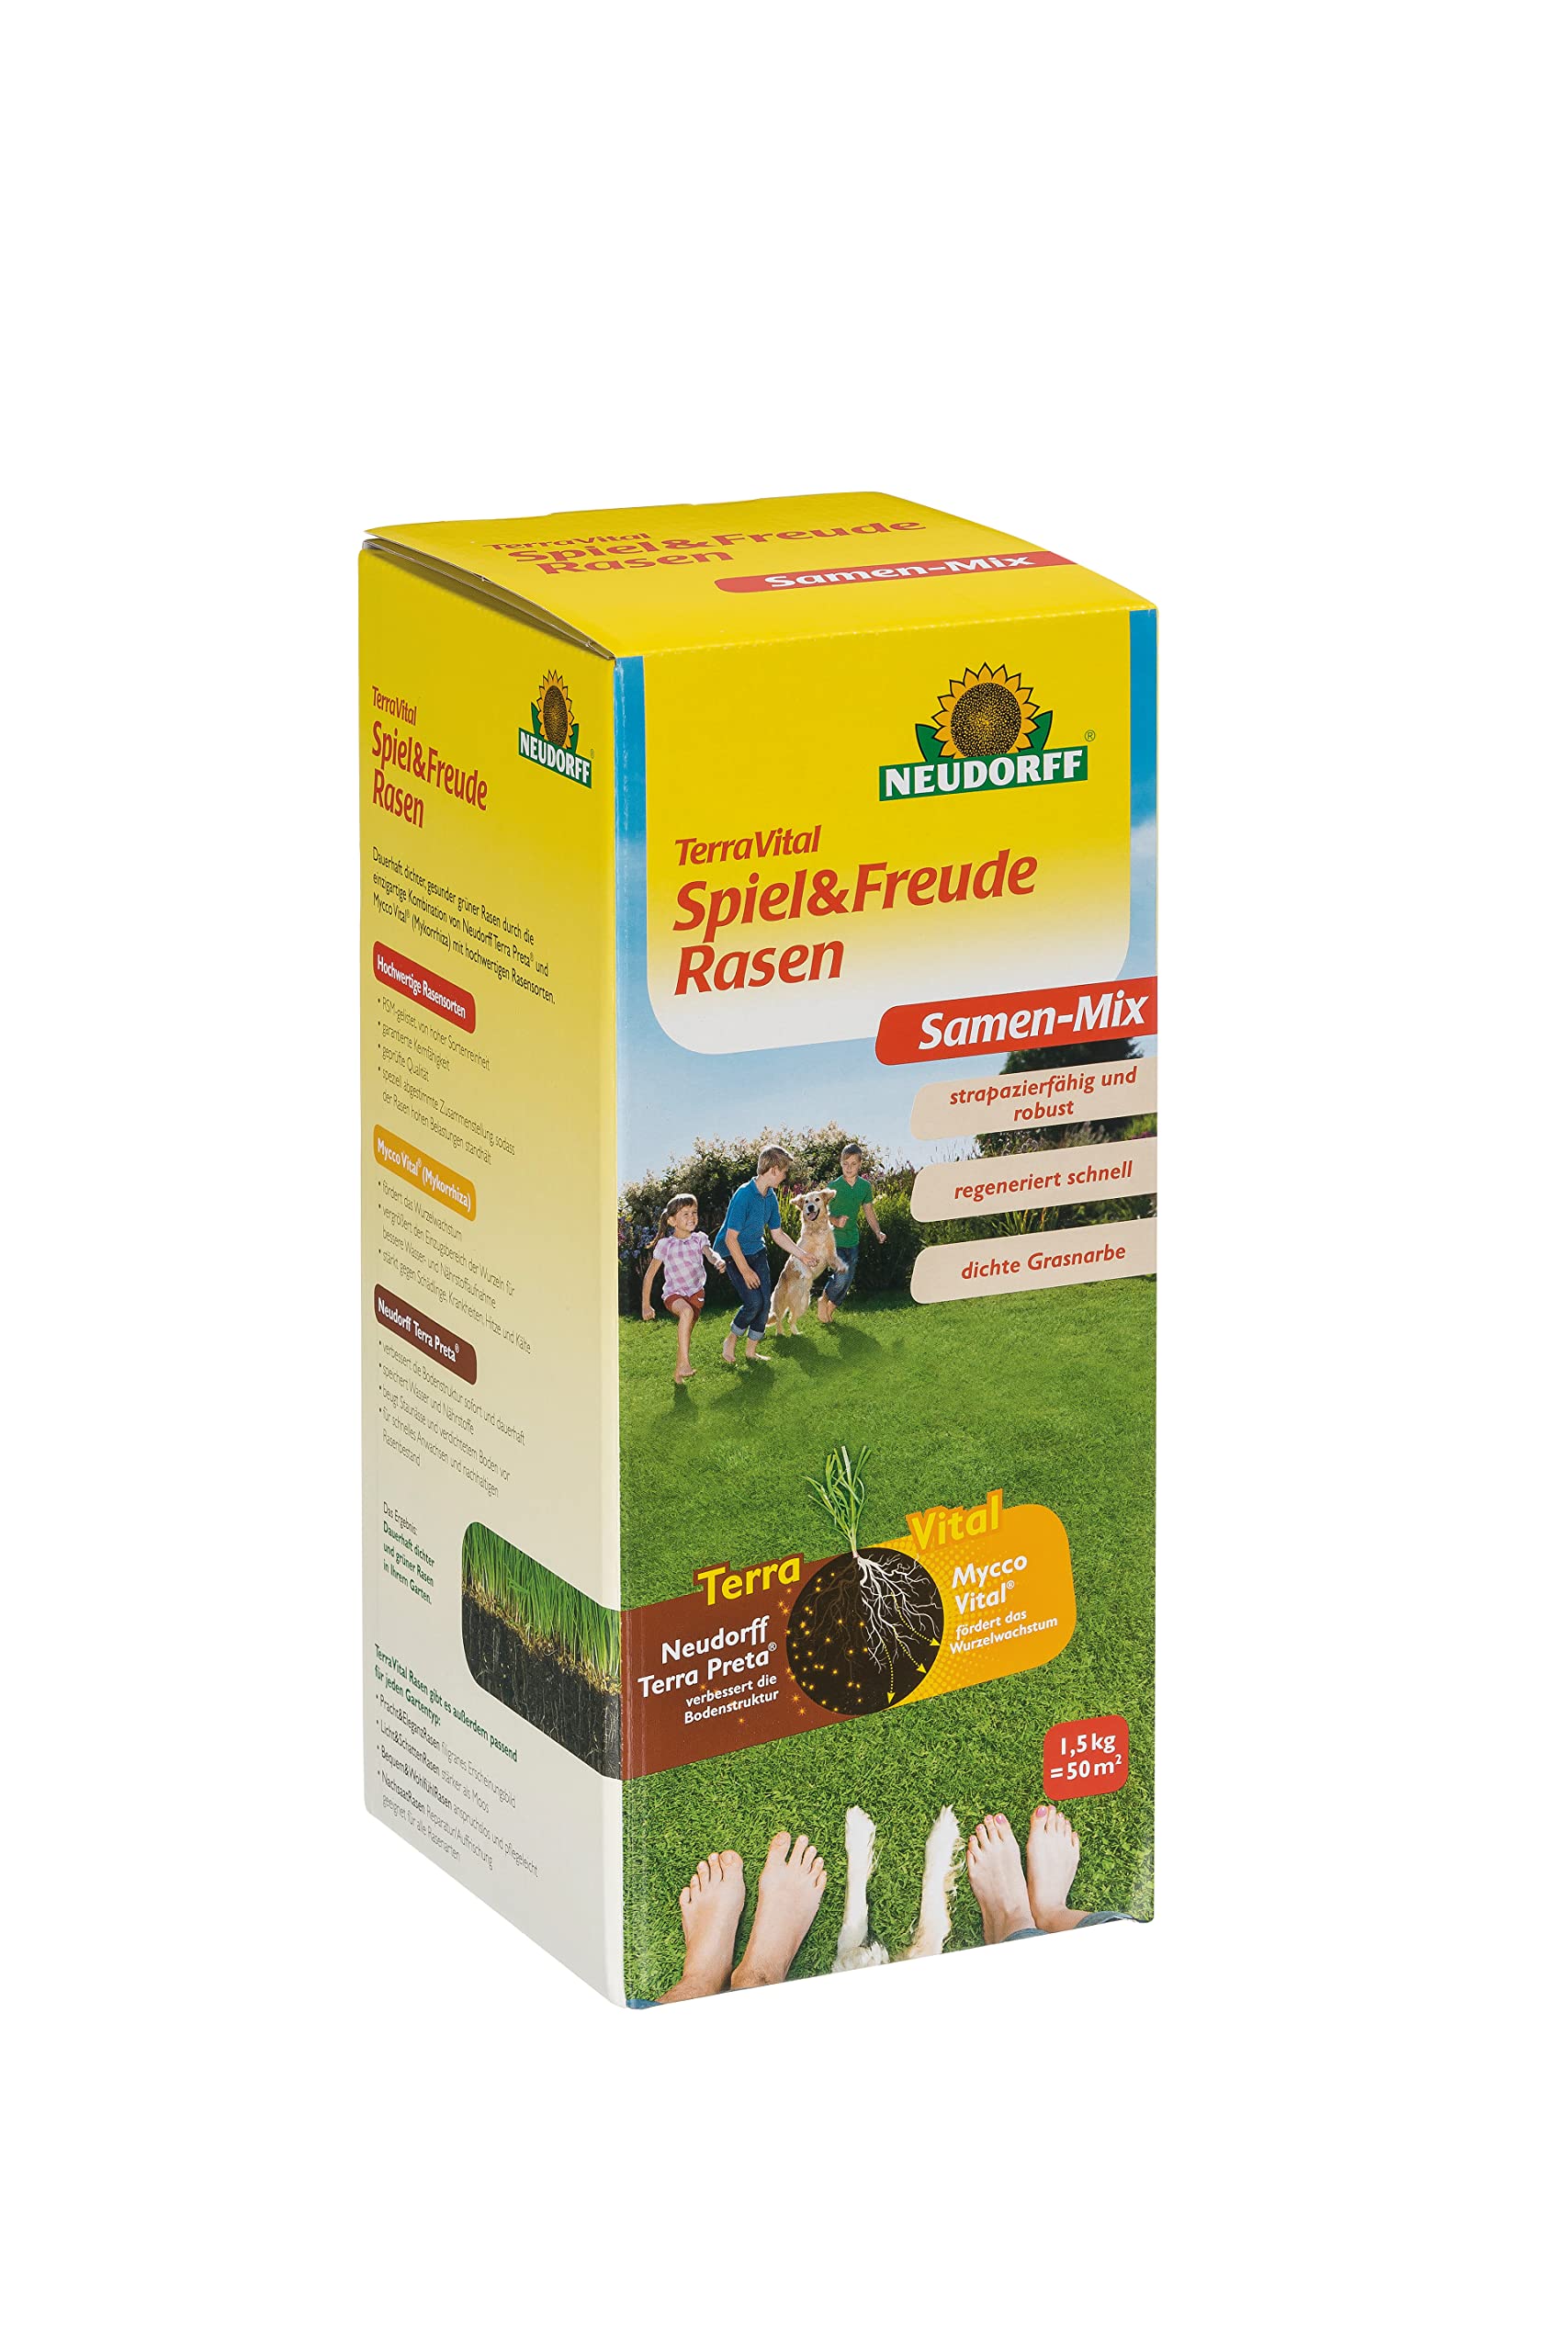 Neudorff TerraVital Spiel & Freude Rasen für eine dichte Grasnabe für einen strapazierfähigen Rasen für alle Ansprüche - 1,5 kg für 50m²